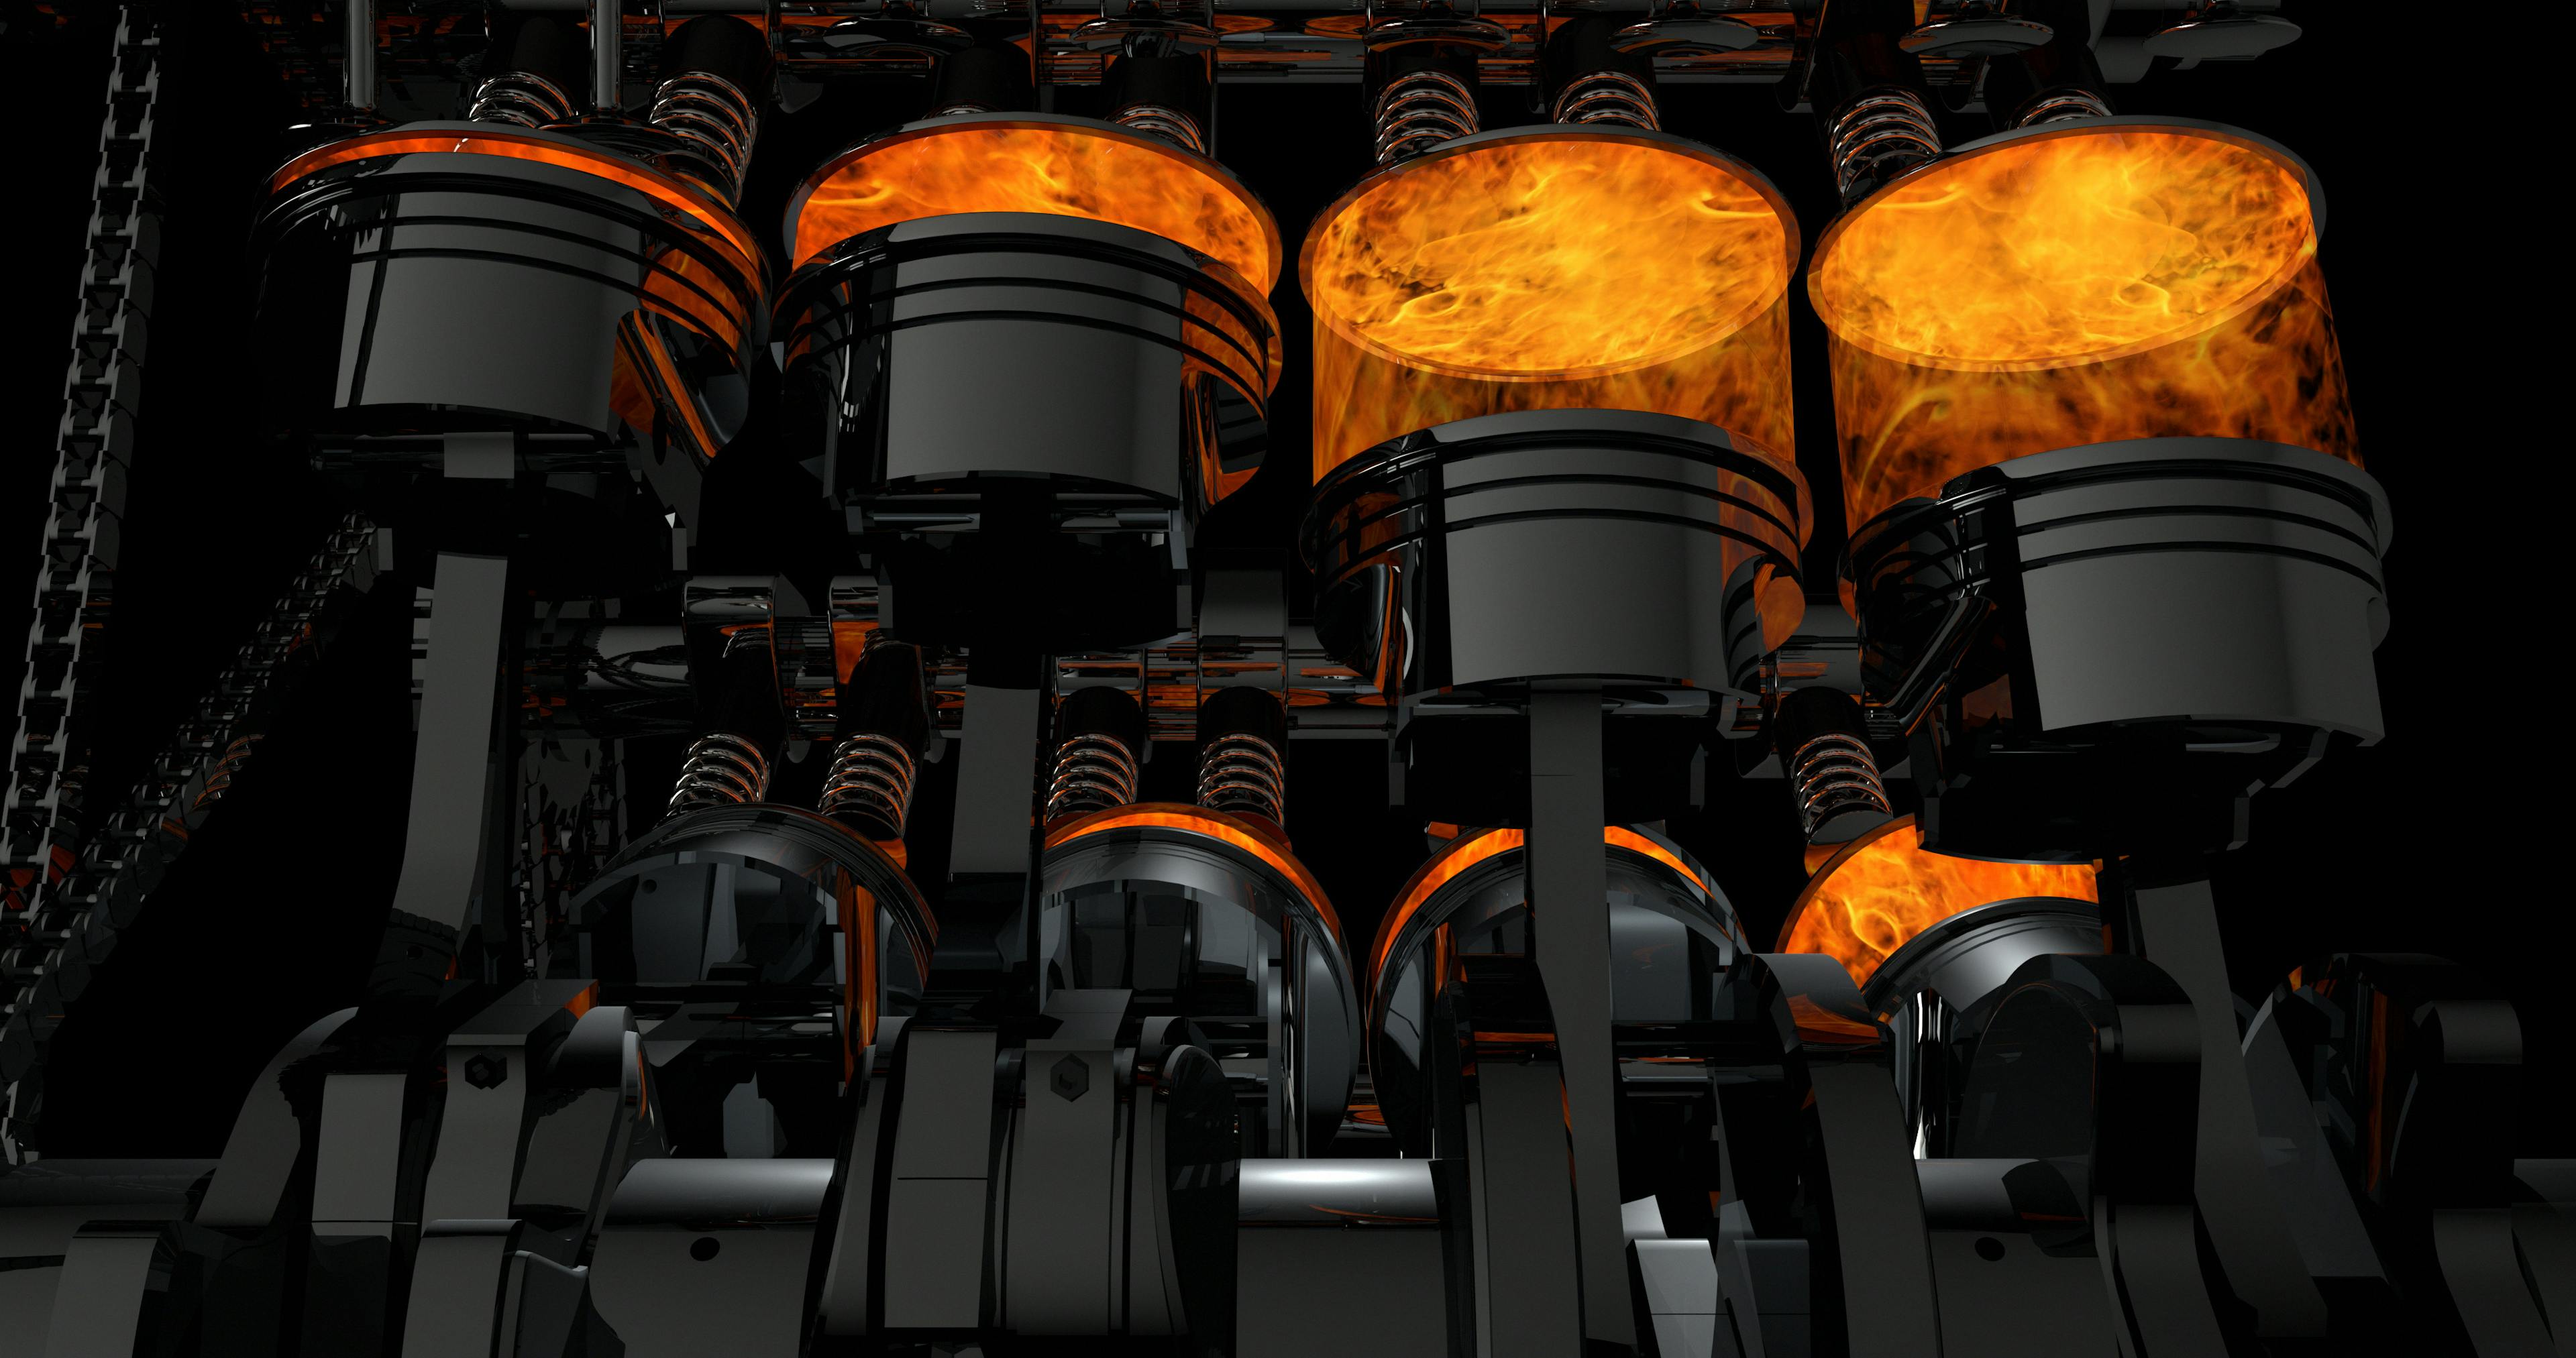 Modello 3D di un motore V8 funzionante. Pistoni e altre parti meccaniche sono in movimento.